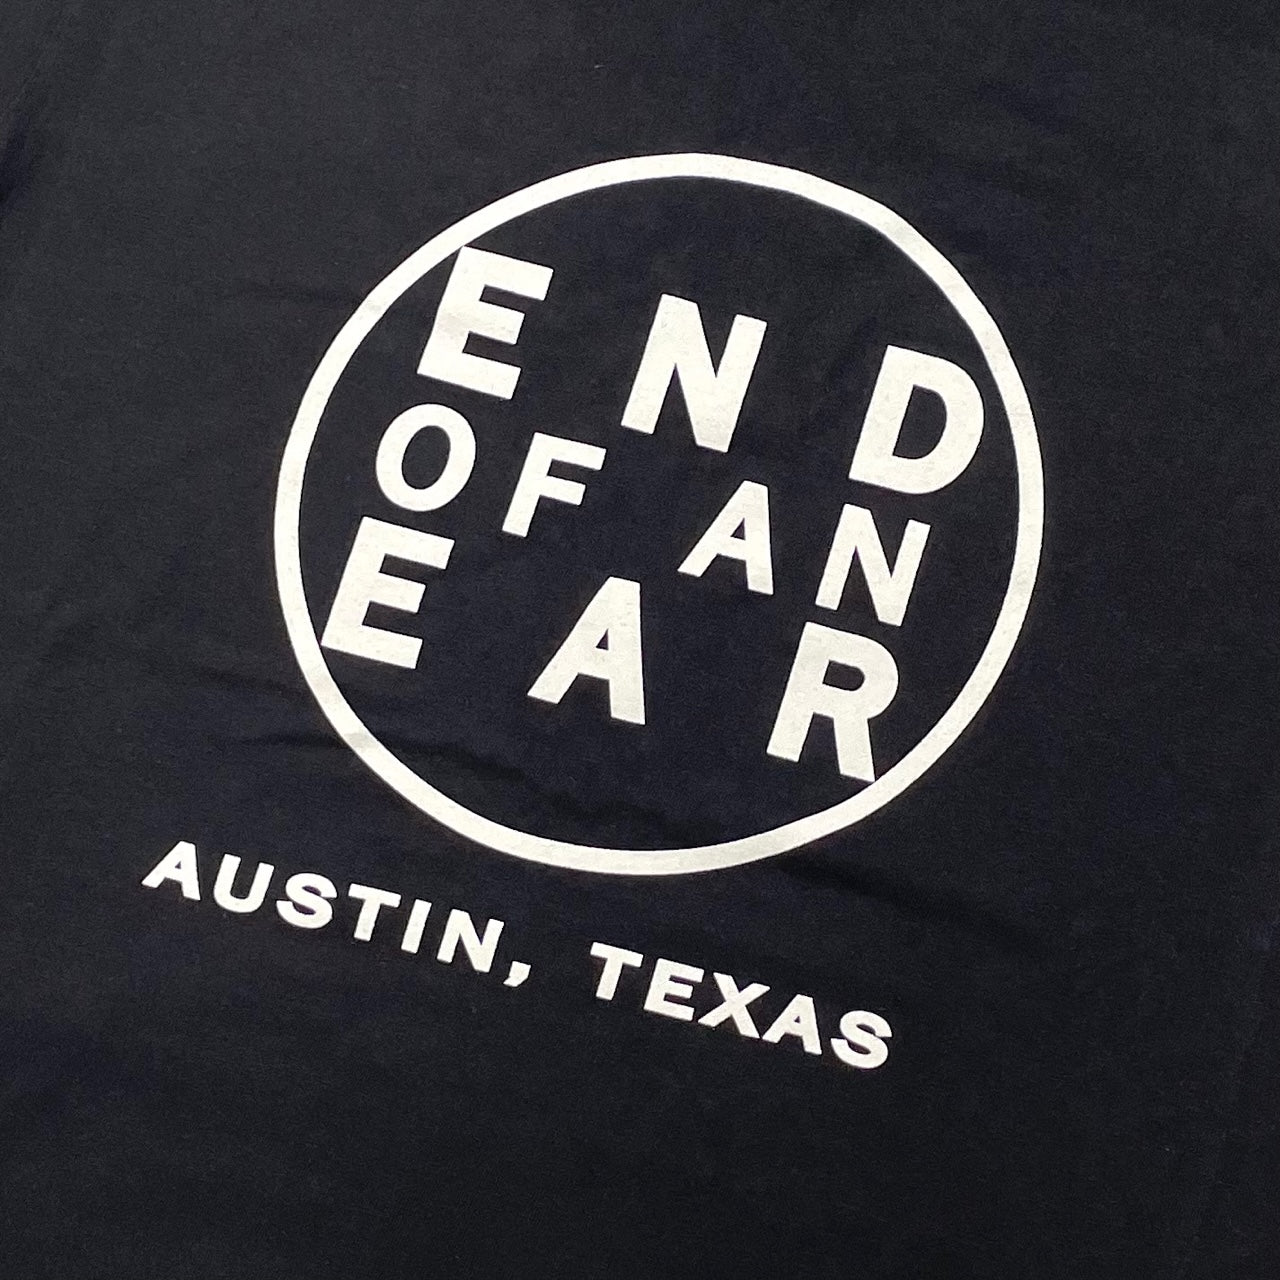 END OF AN EAR T-Shirt